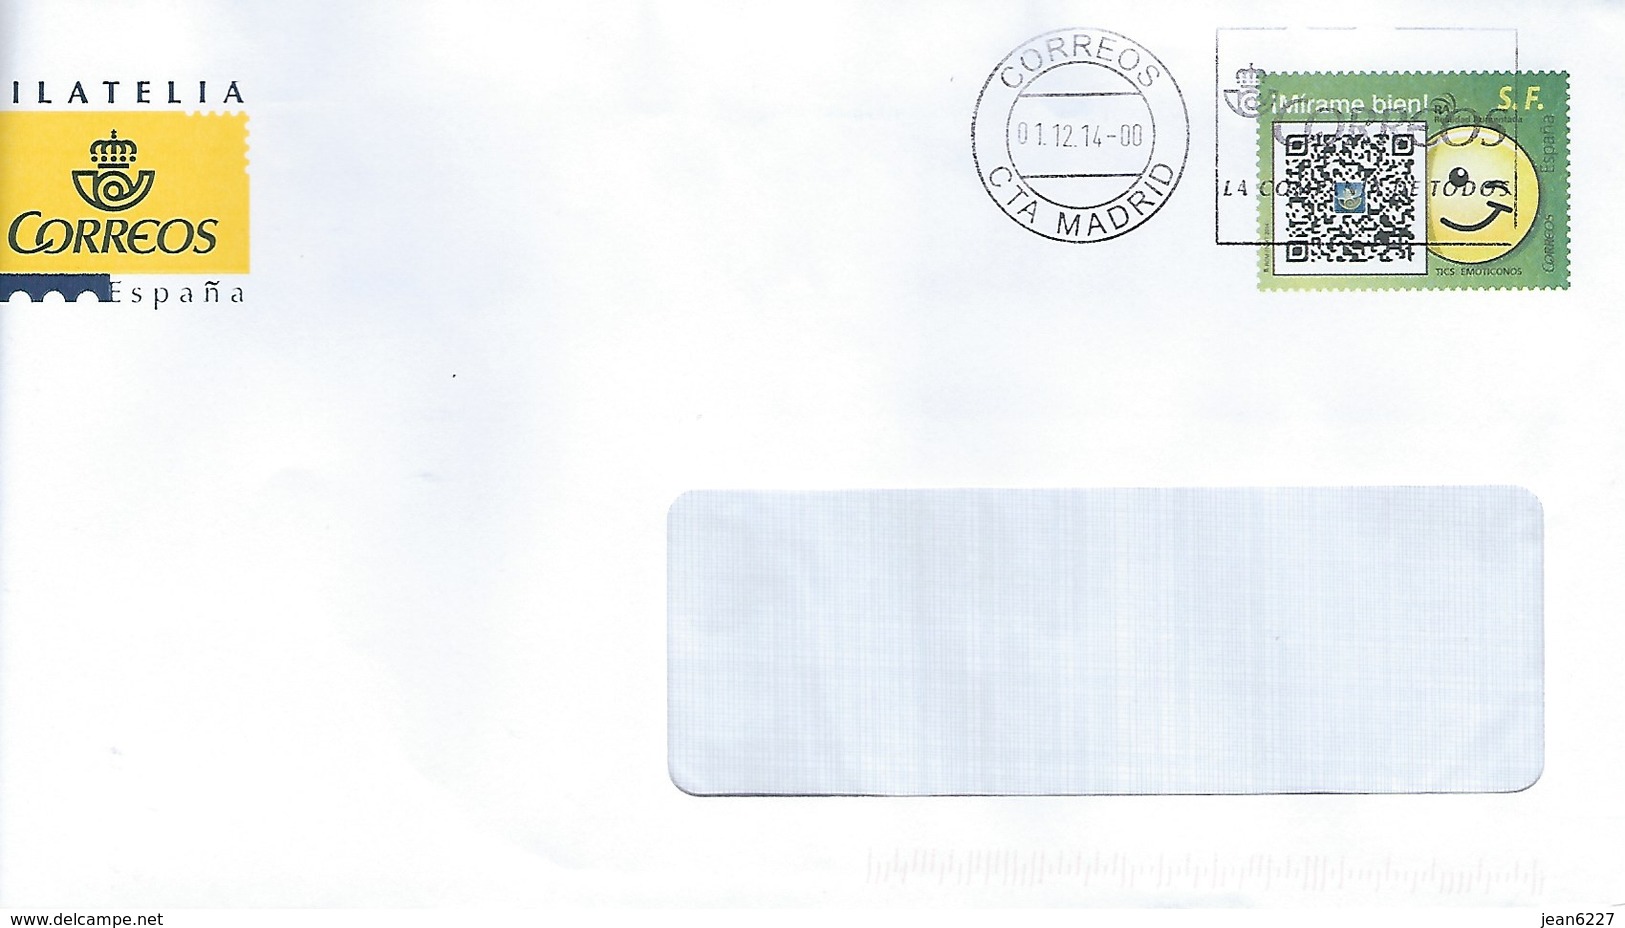 Enveloppe De Le Poste Espagnole - Mirame Bien - Oblitéré 01.12.14 - Lettres & Documents